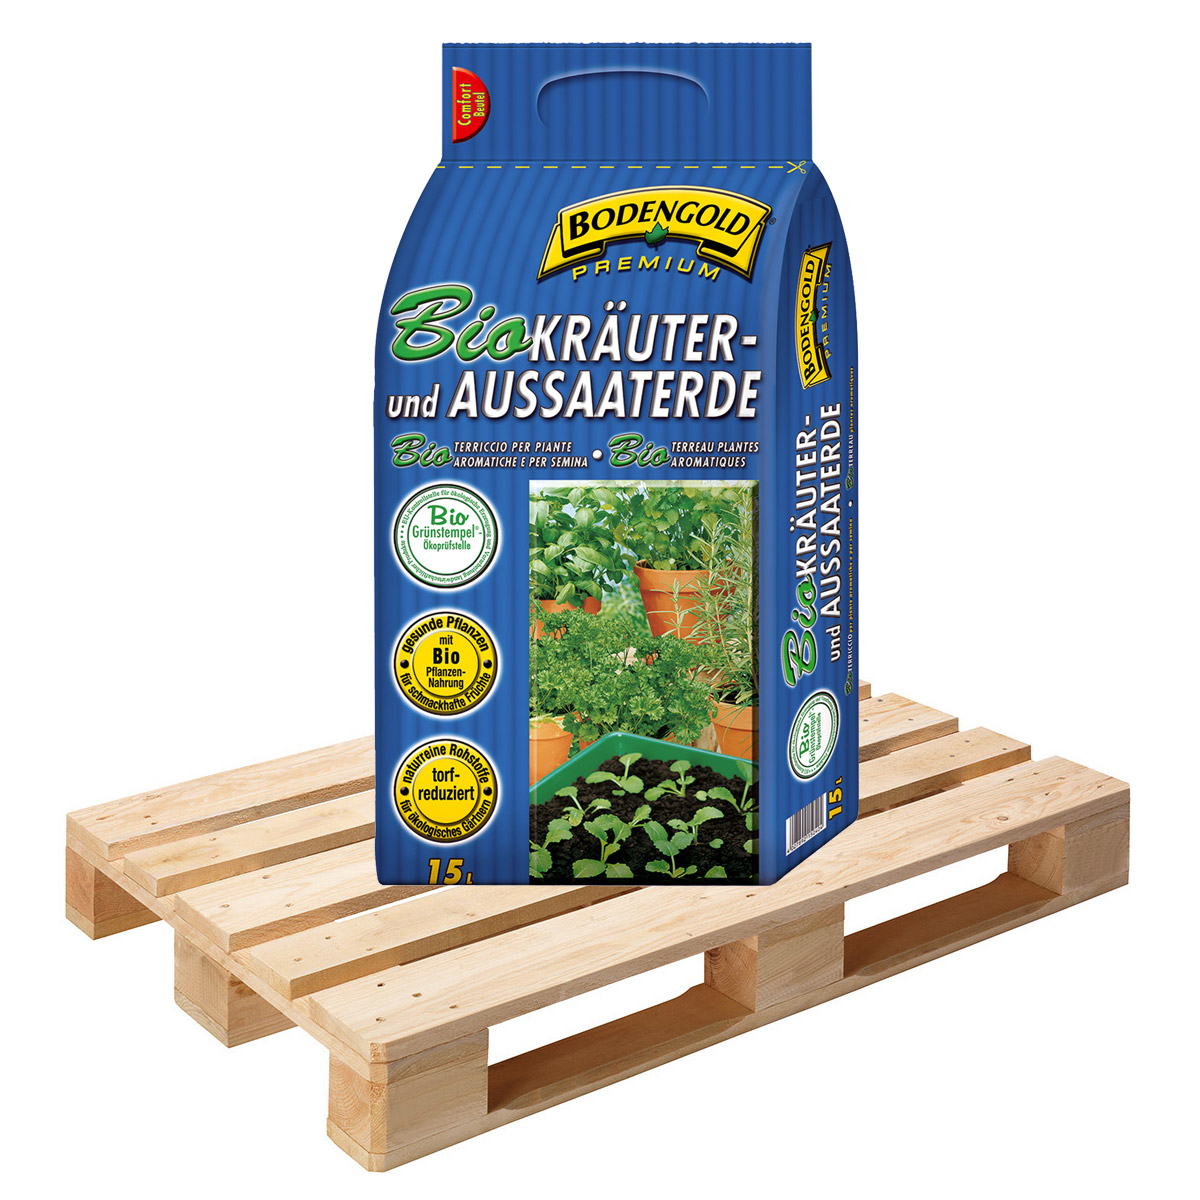 BIO Kräuter- & Aussaaterde Bodengold Premium  54 Sack á 15 Liter